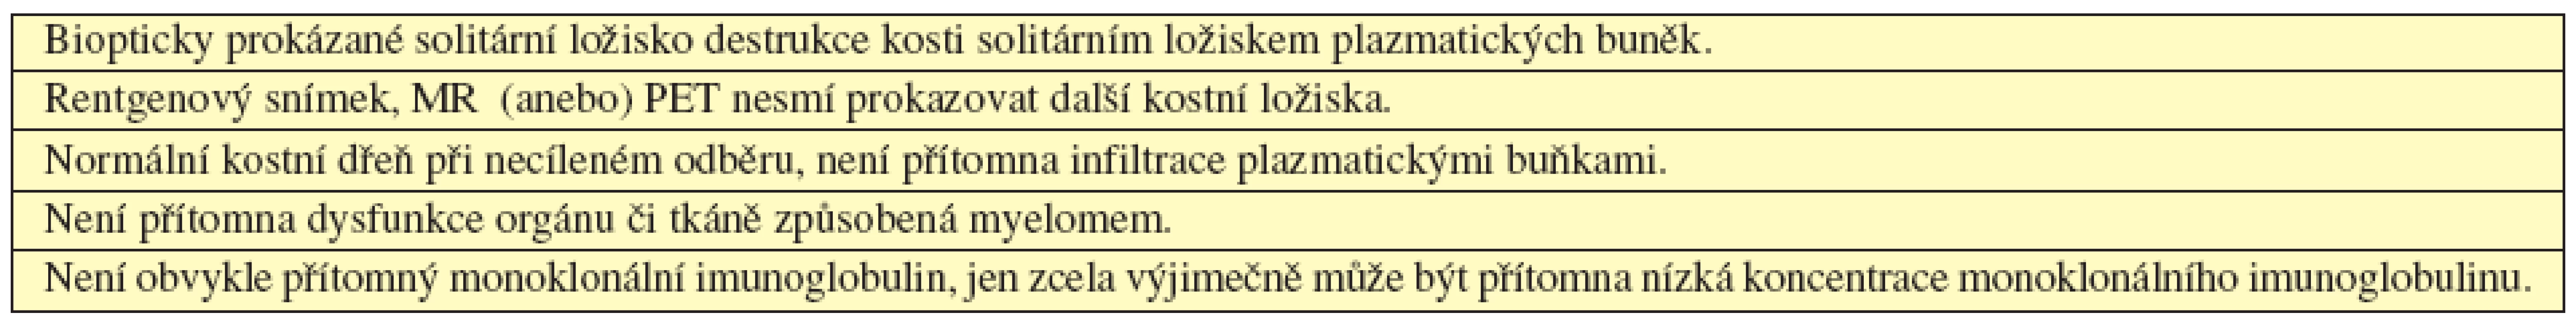 Kritéria solitárního kostního plazmocytomu (International Myeloma Working Group, 2003).